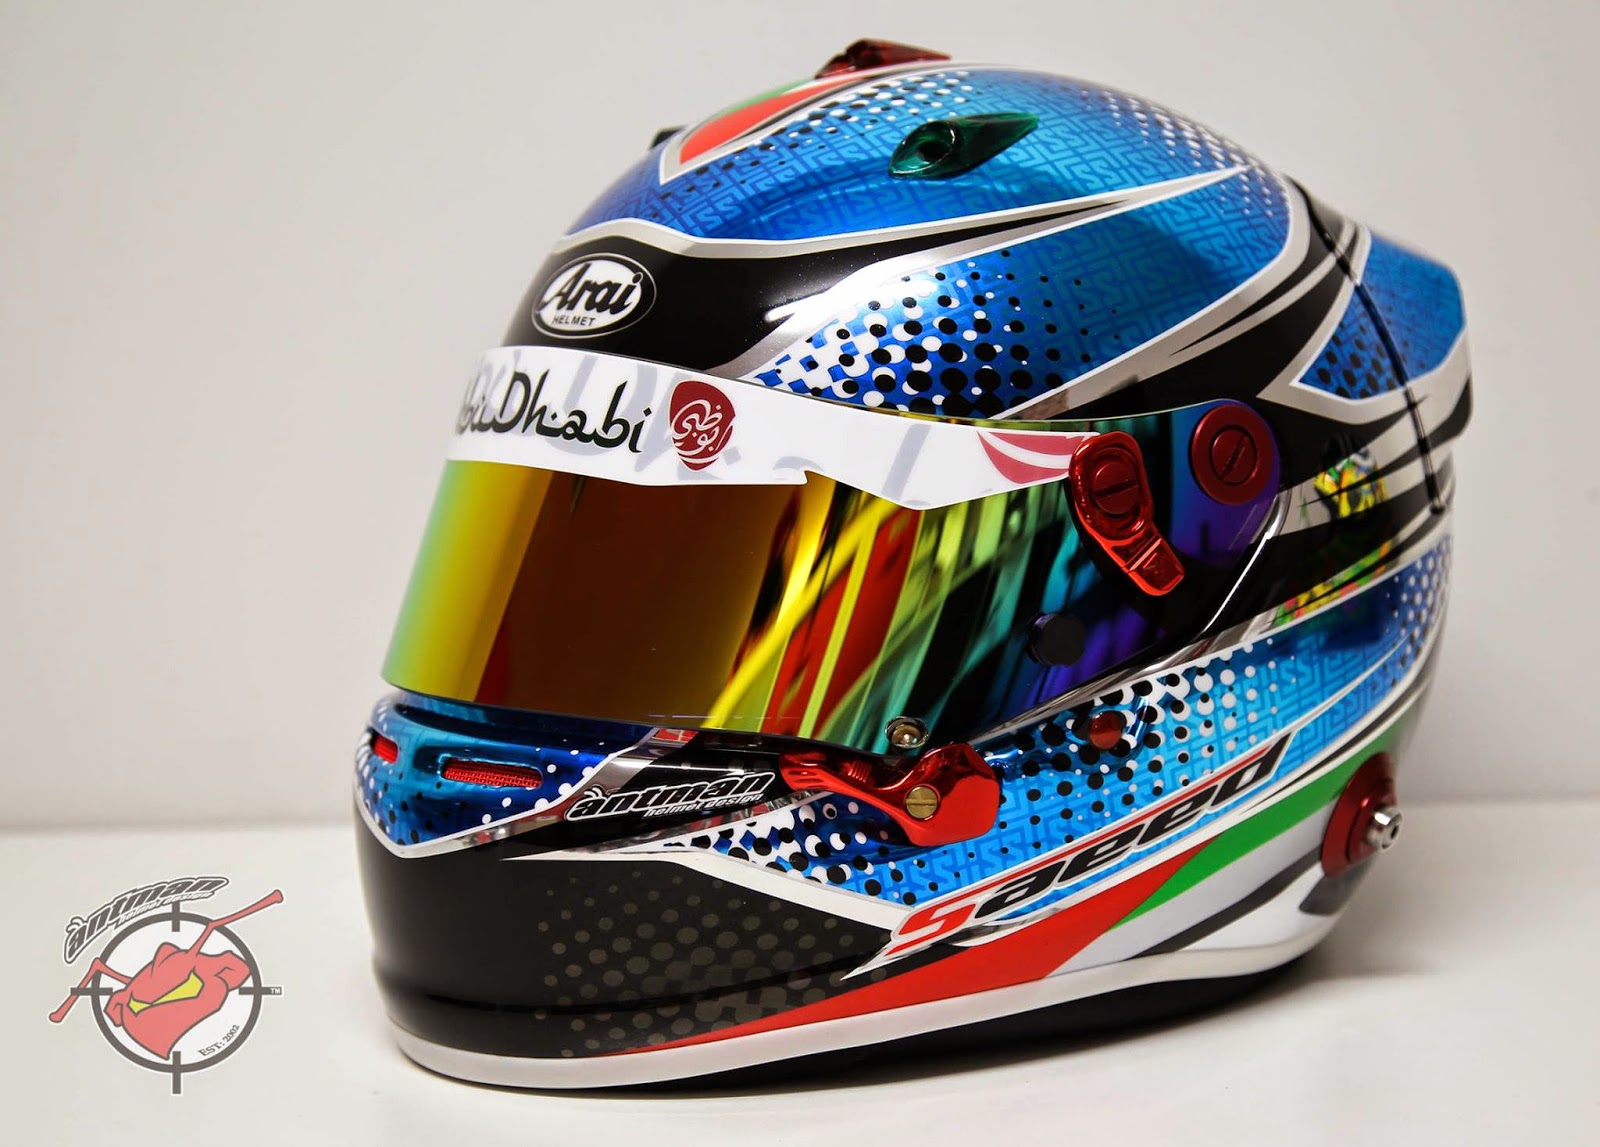 Racing Helmets Garage Arai Gp 6 2015 By Antman Helmet Design